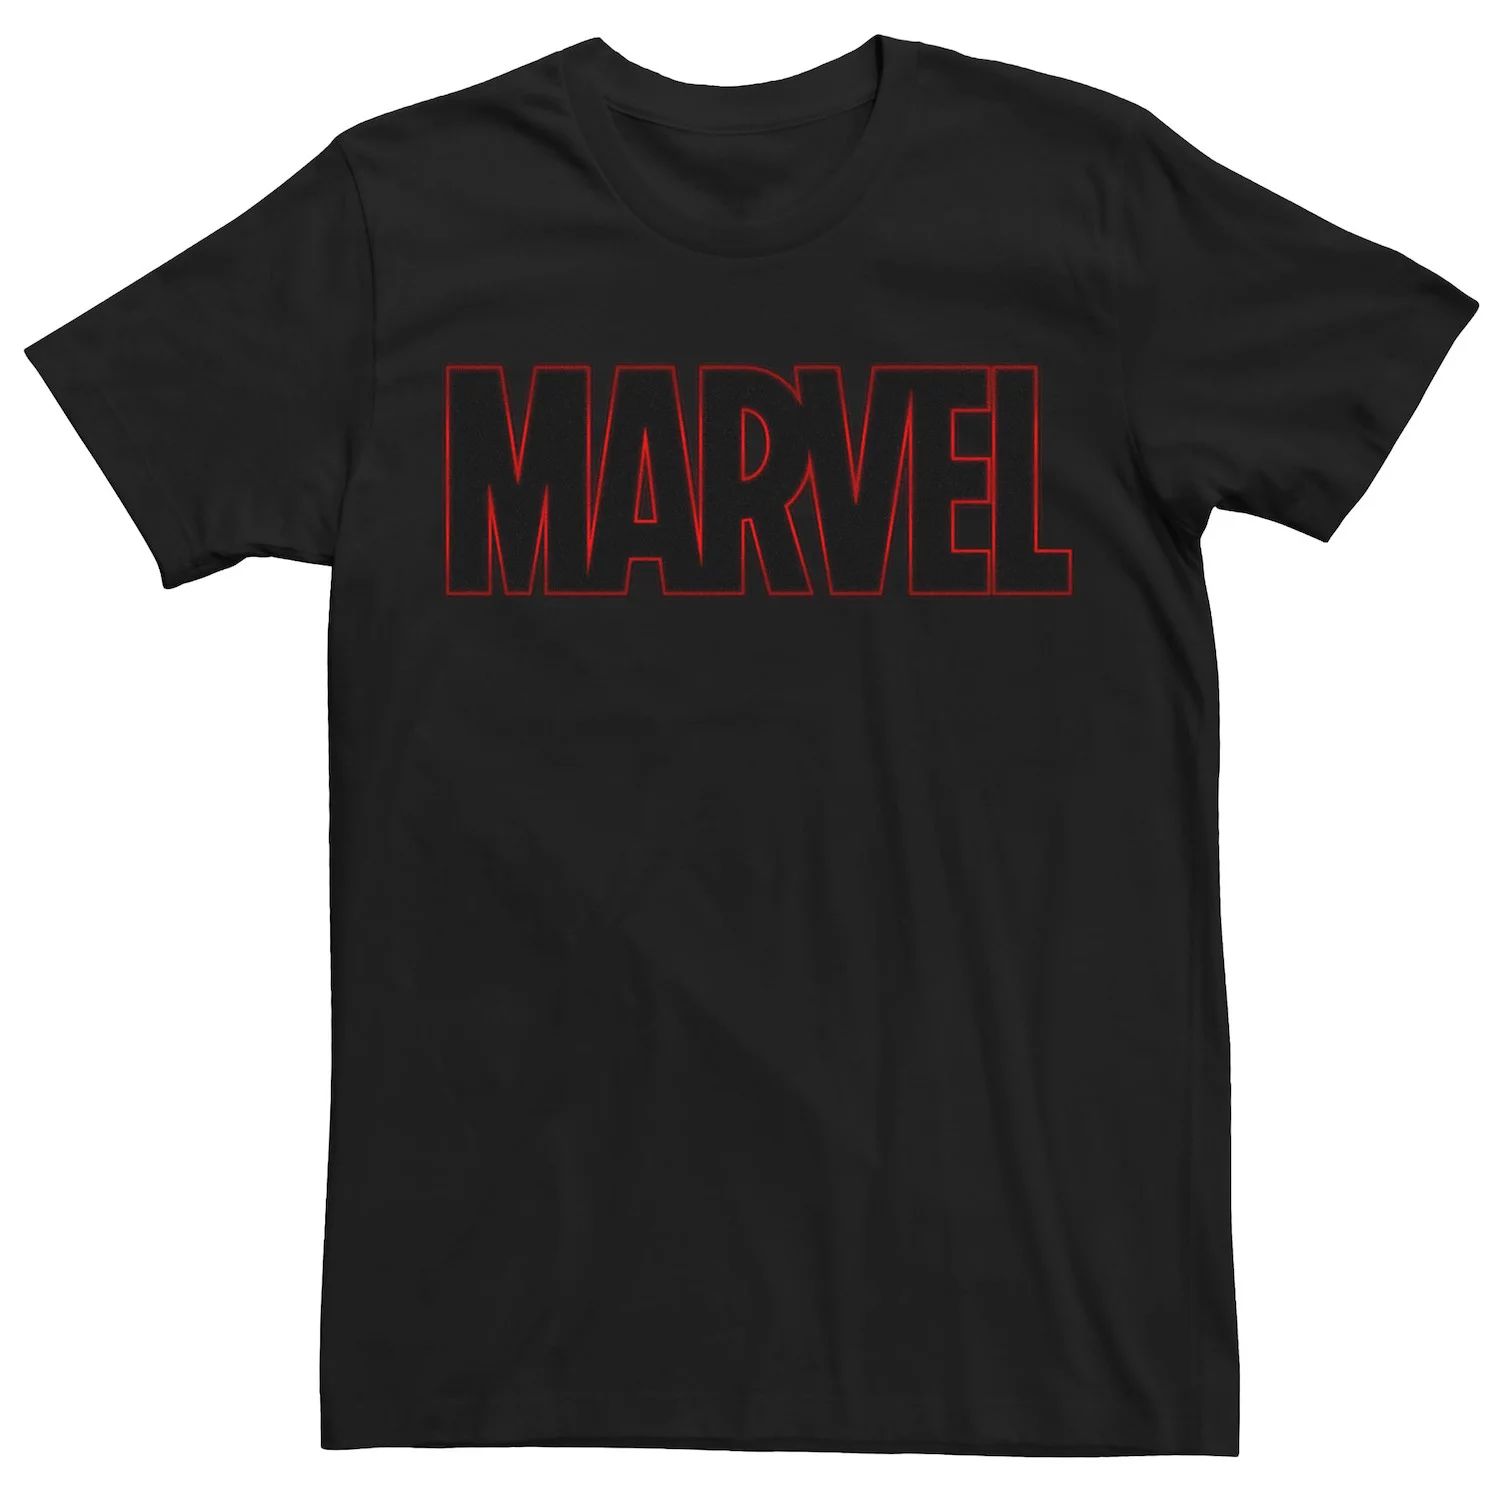 классическая футболка с логотипом box marvel черный Мужская классическая футболка с графическим логотипом Marvel